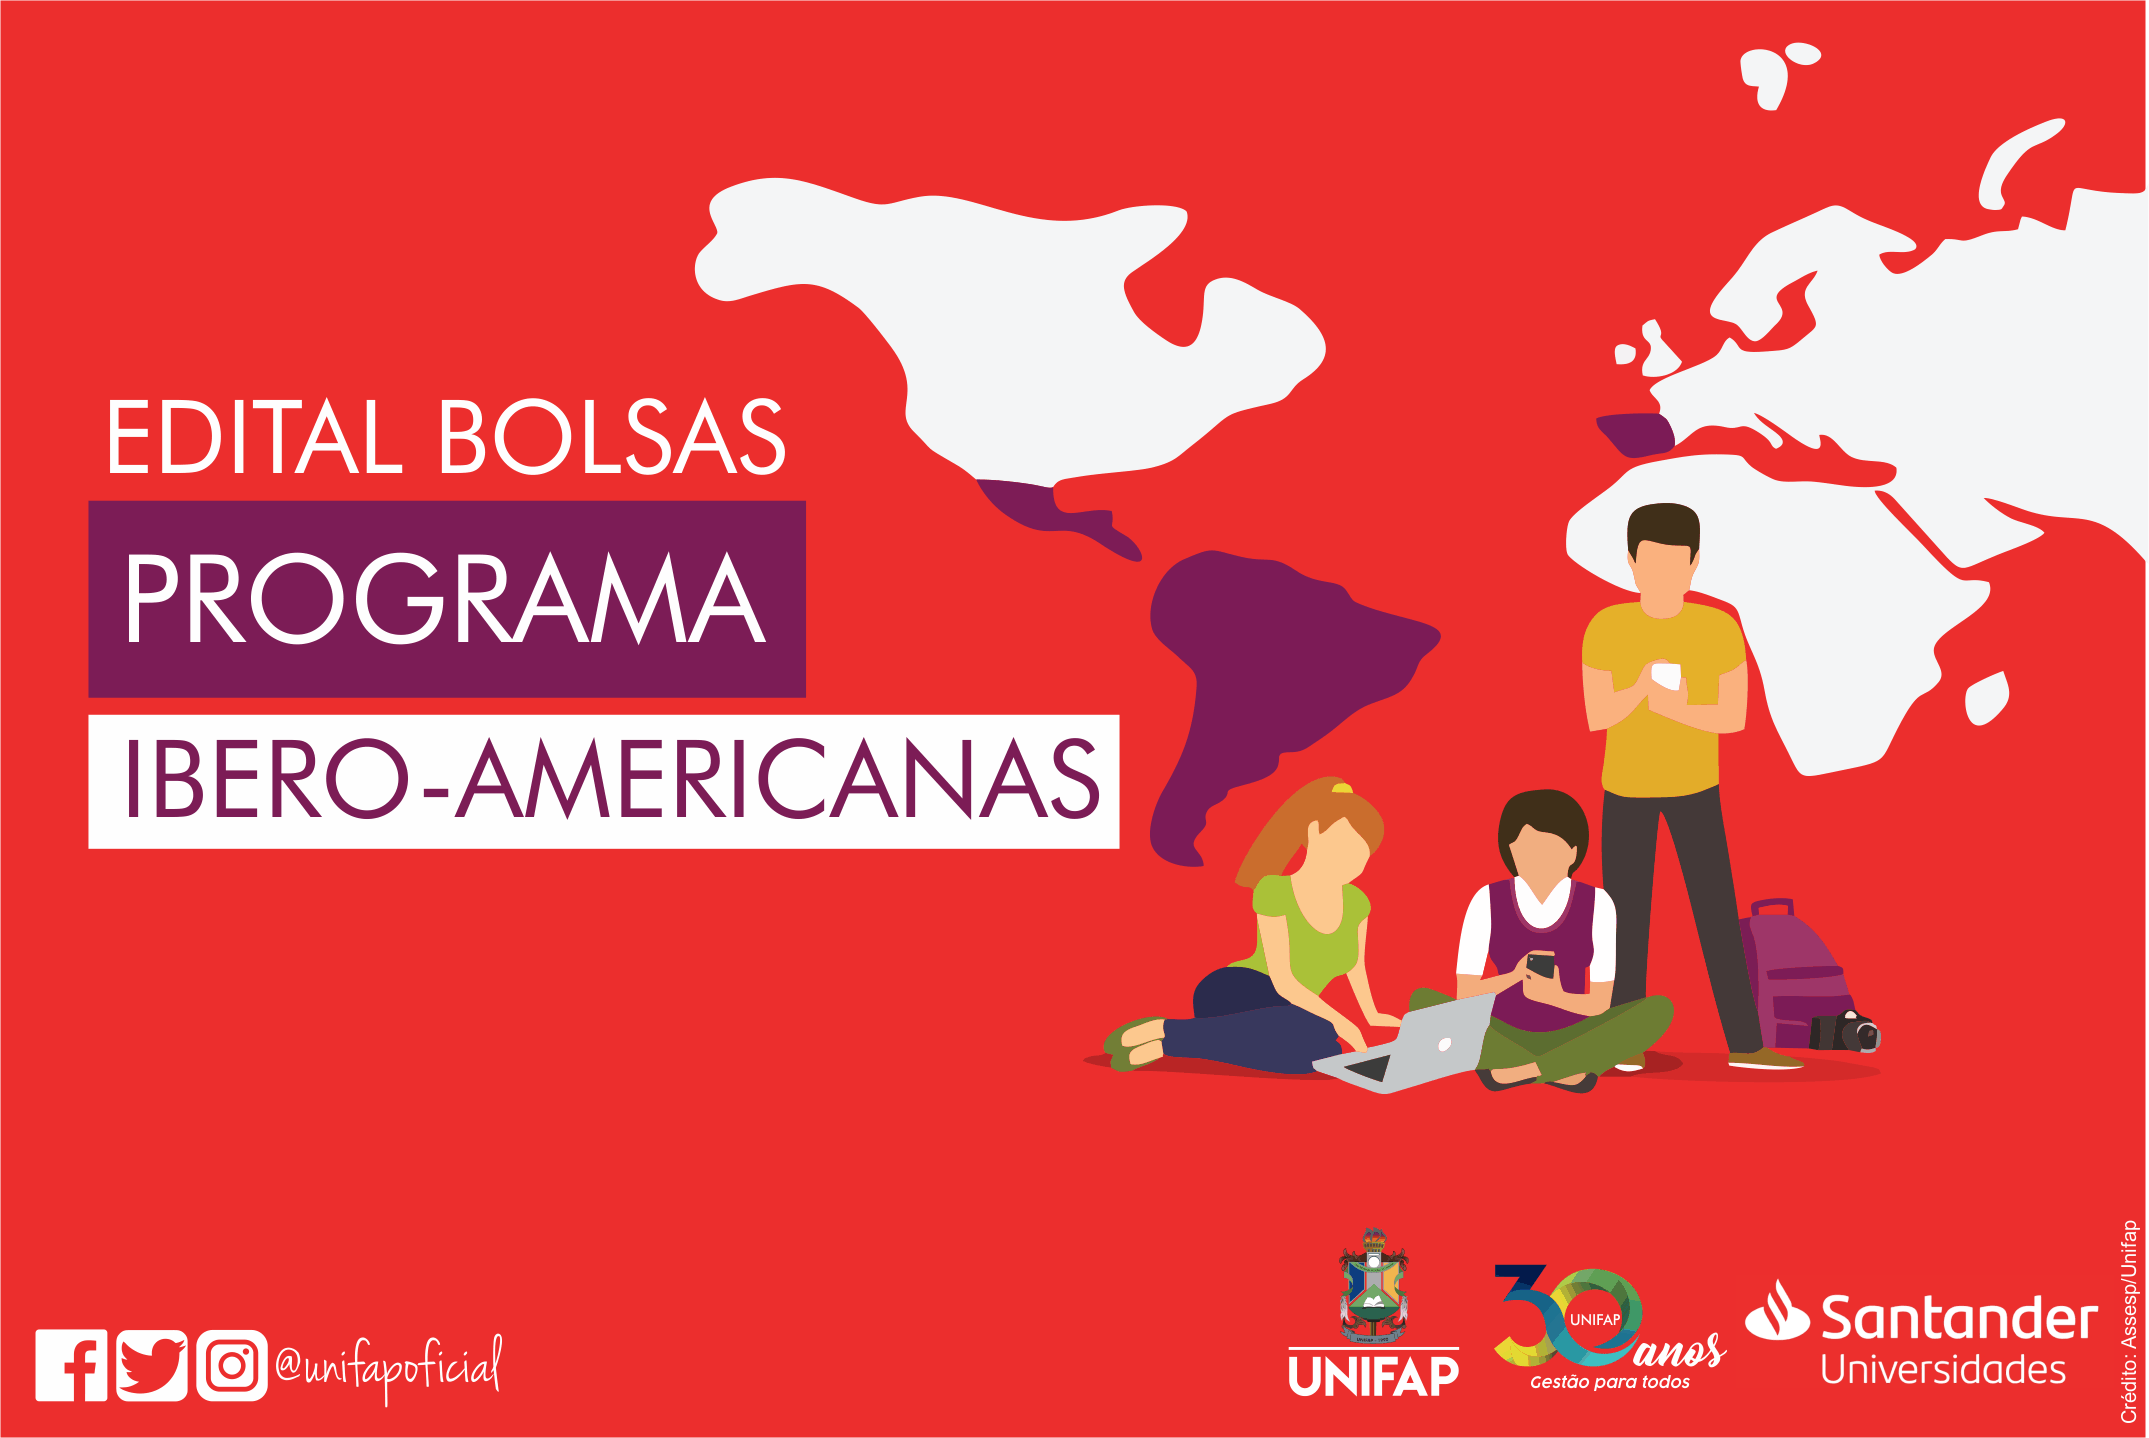 Programa de Bolsas Ibero-Americanas 2020 abre seleção para alunos da UNIFAP